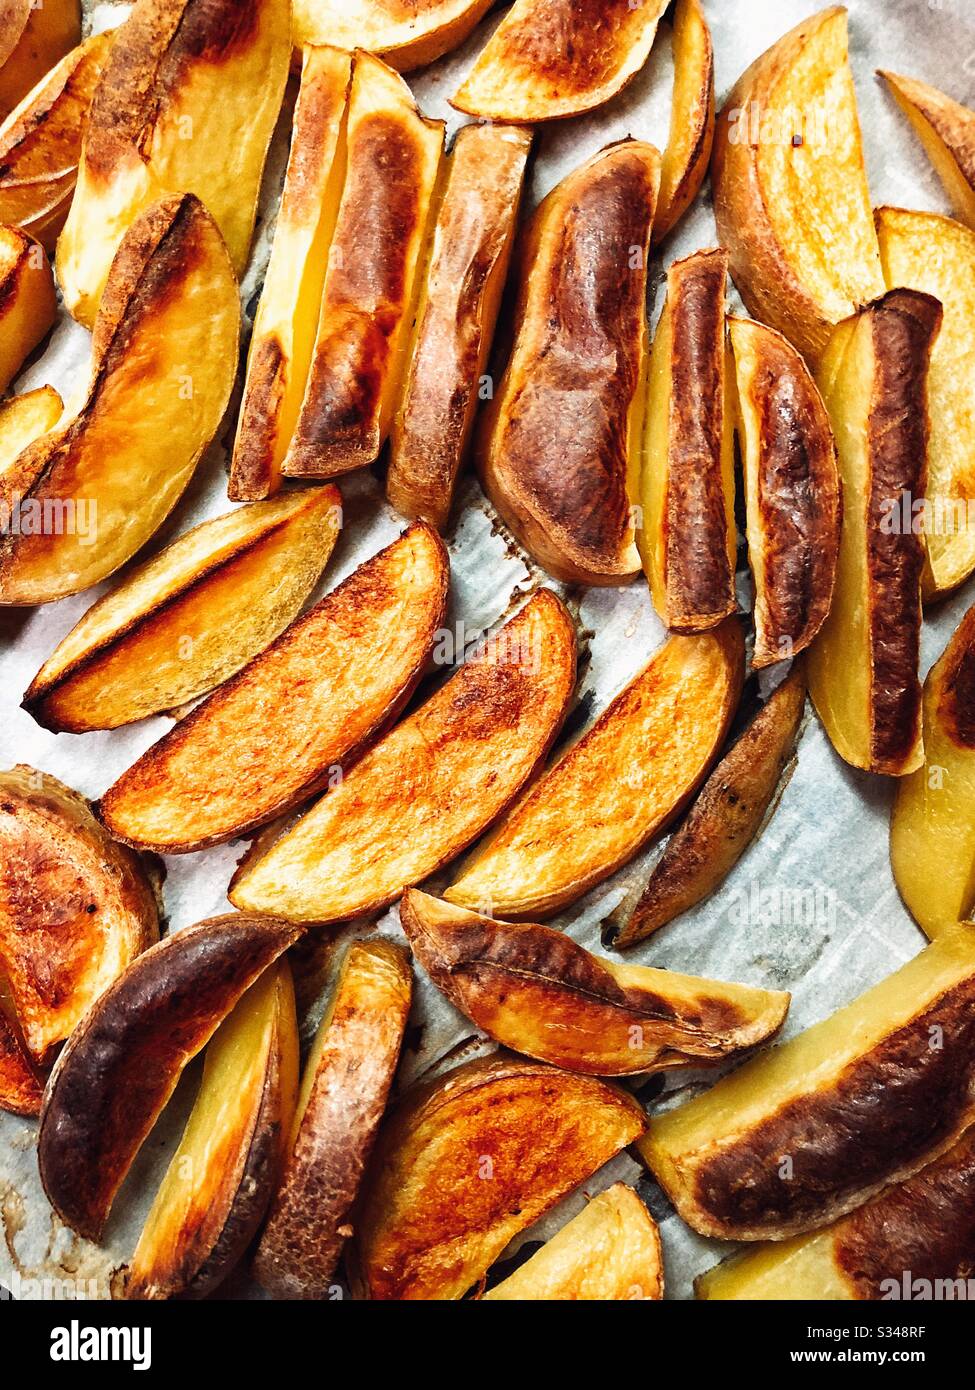 Zeppe di patate dorate arrostite direttamente dal forno Foto Stock